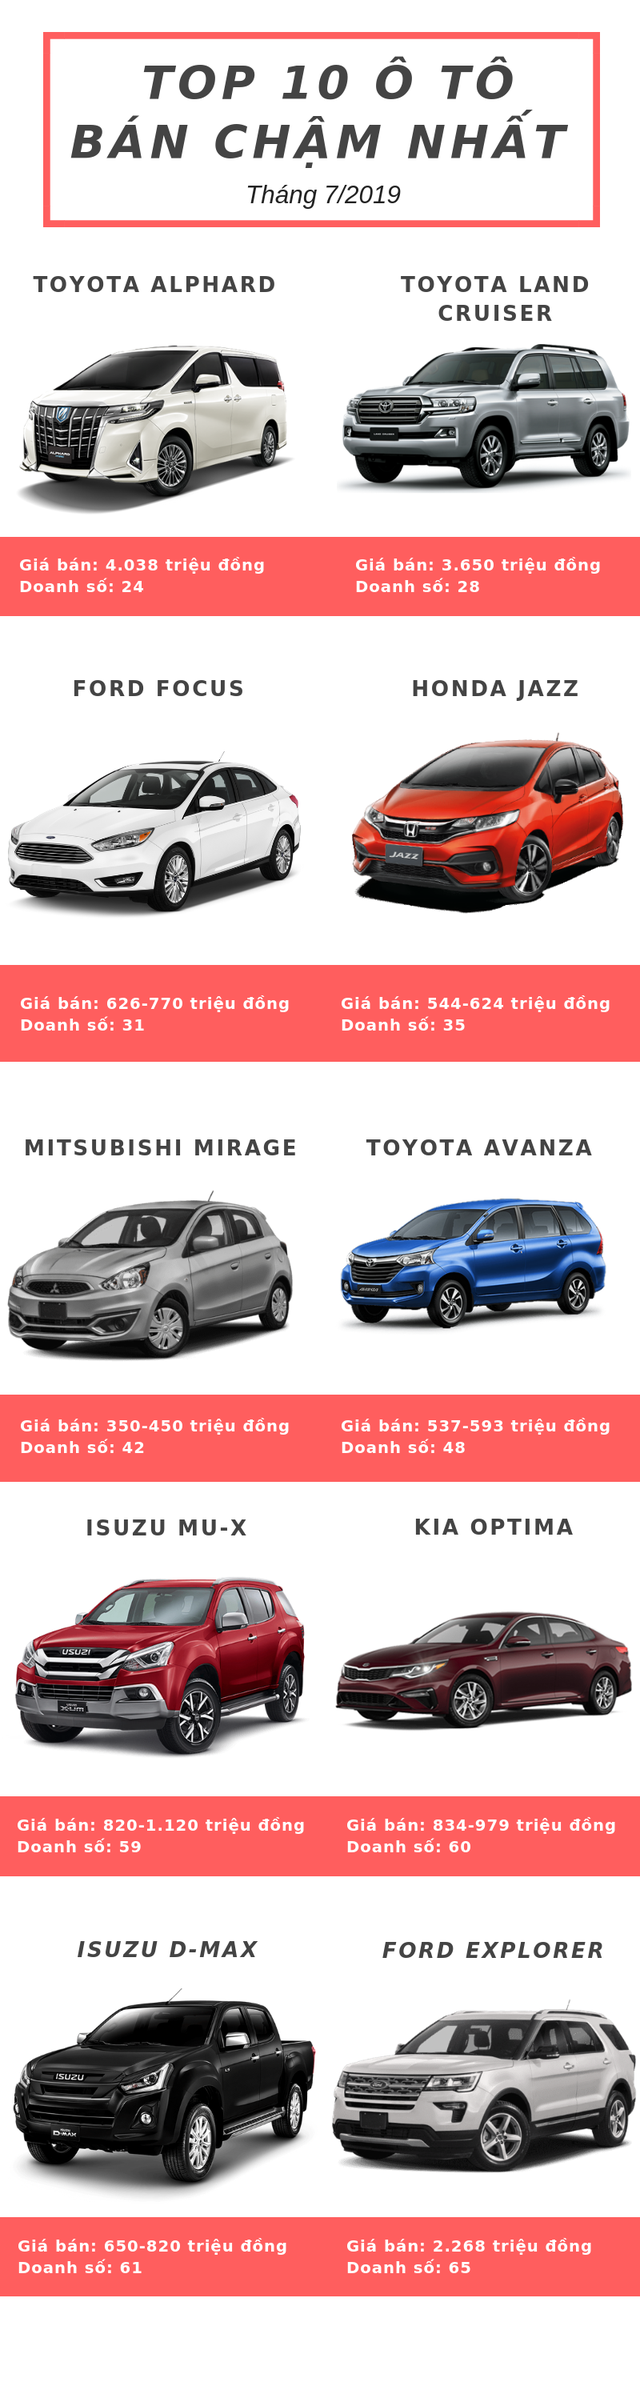  Top 10 ô tô bán chậm nhất tháng 7/2019: Chủ yếu đến từ Toyota, Ford và Isuzu  - Ảnh 1.